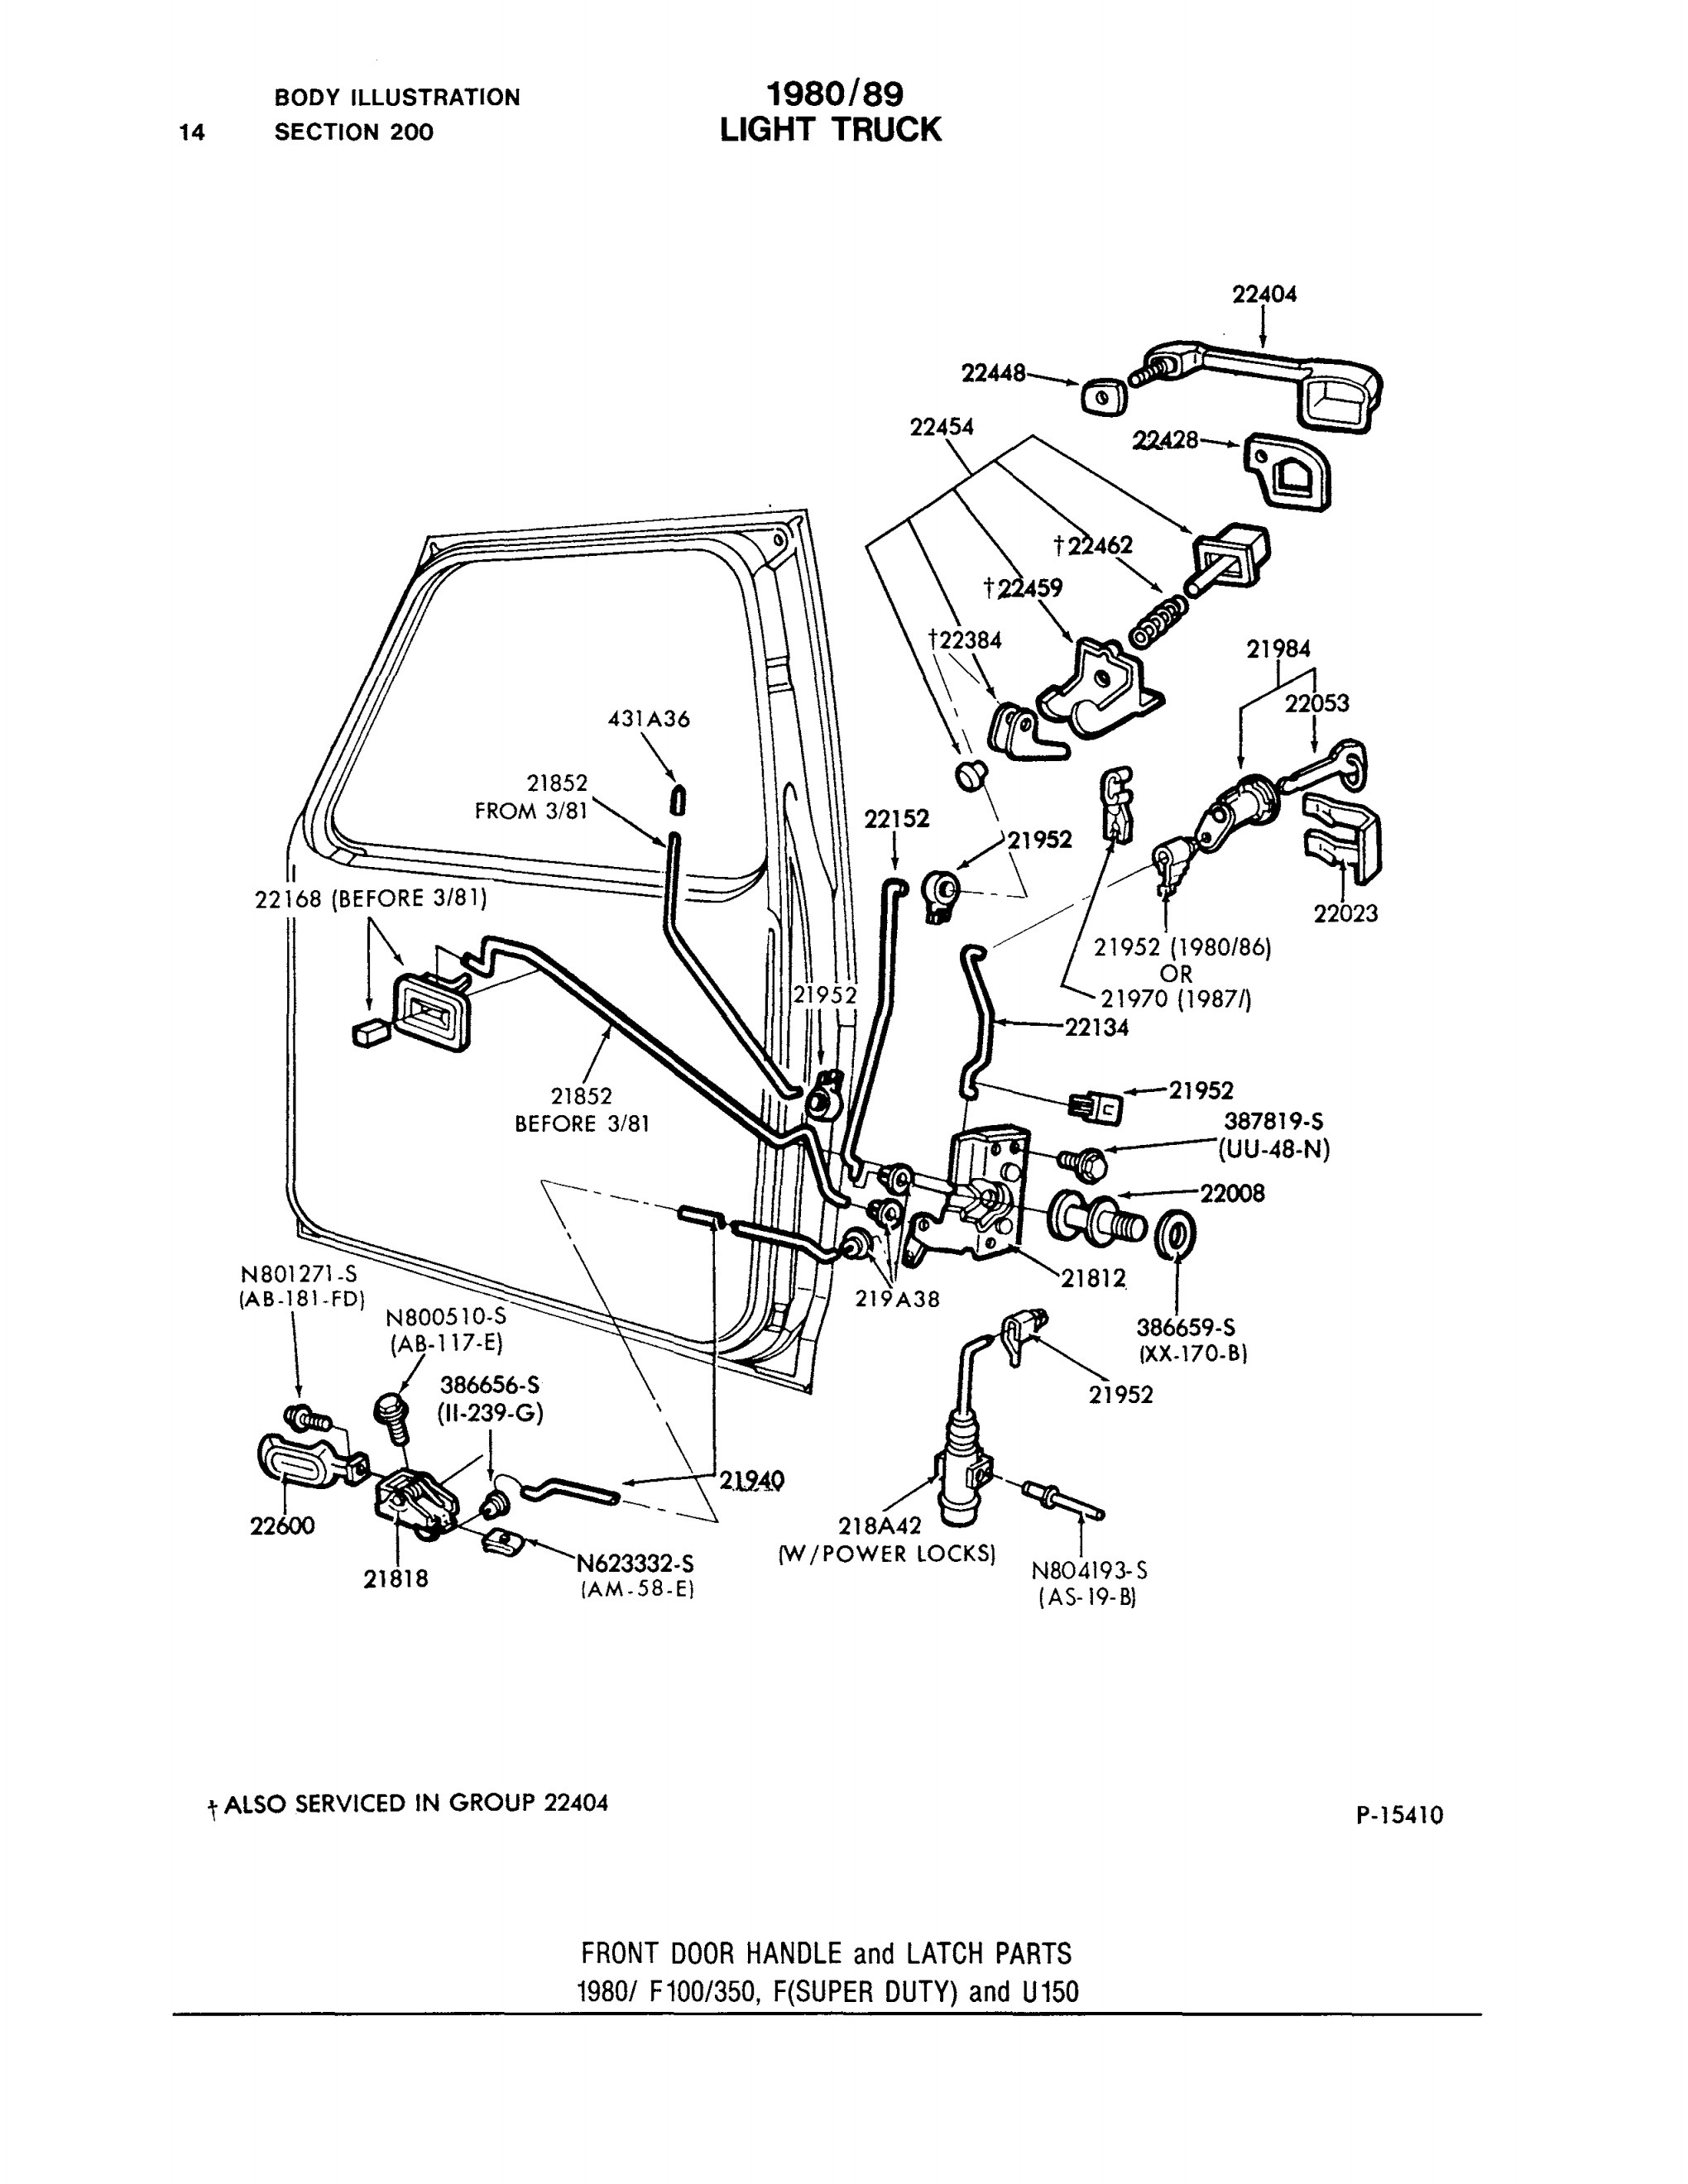 Car Door Lock Mechanism Diagram Bullnose Enthusiasts 1981 ford F100 Door Locks Of Car Door Lock Mechanism Diagram